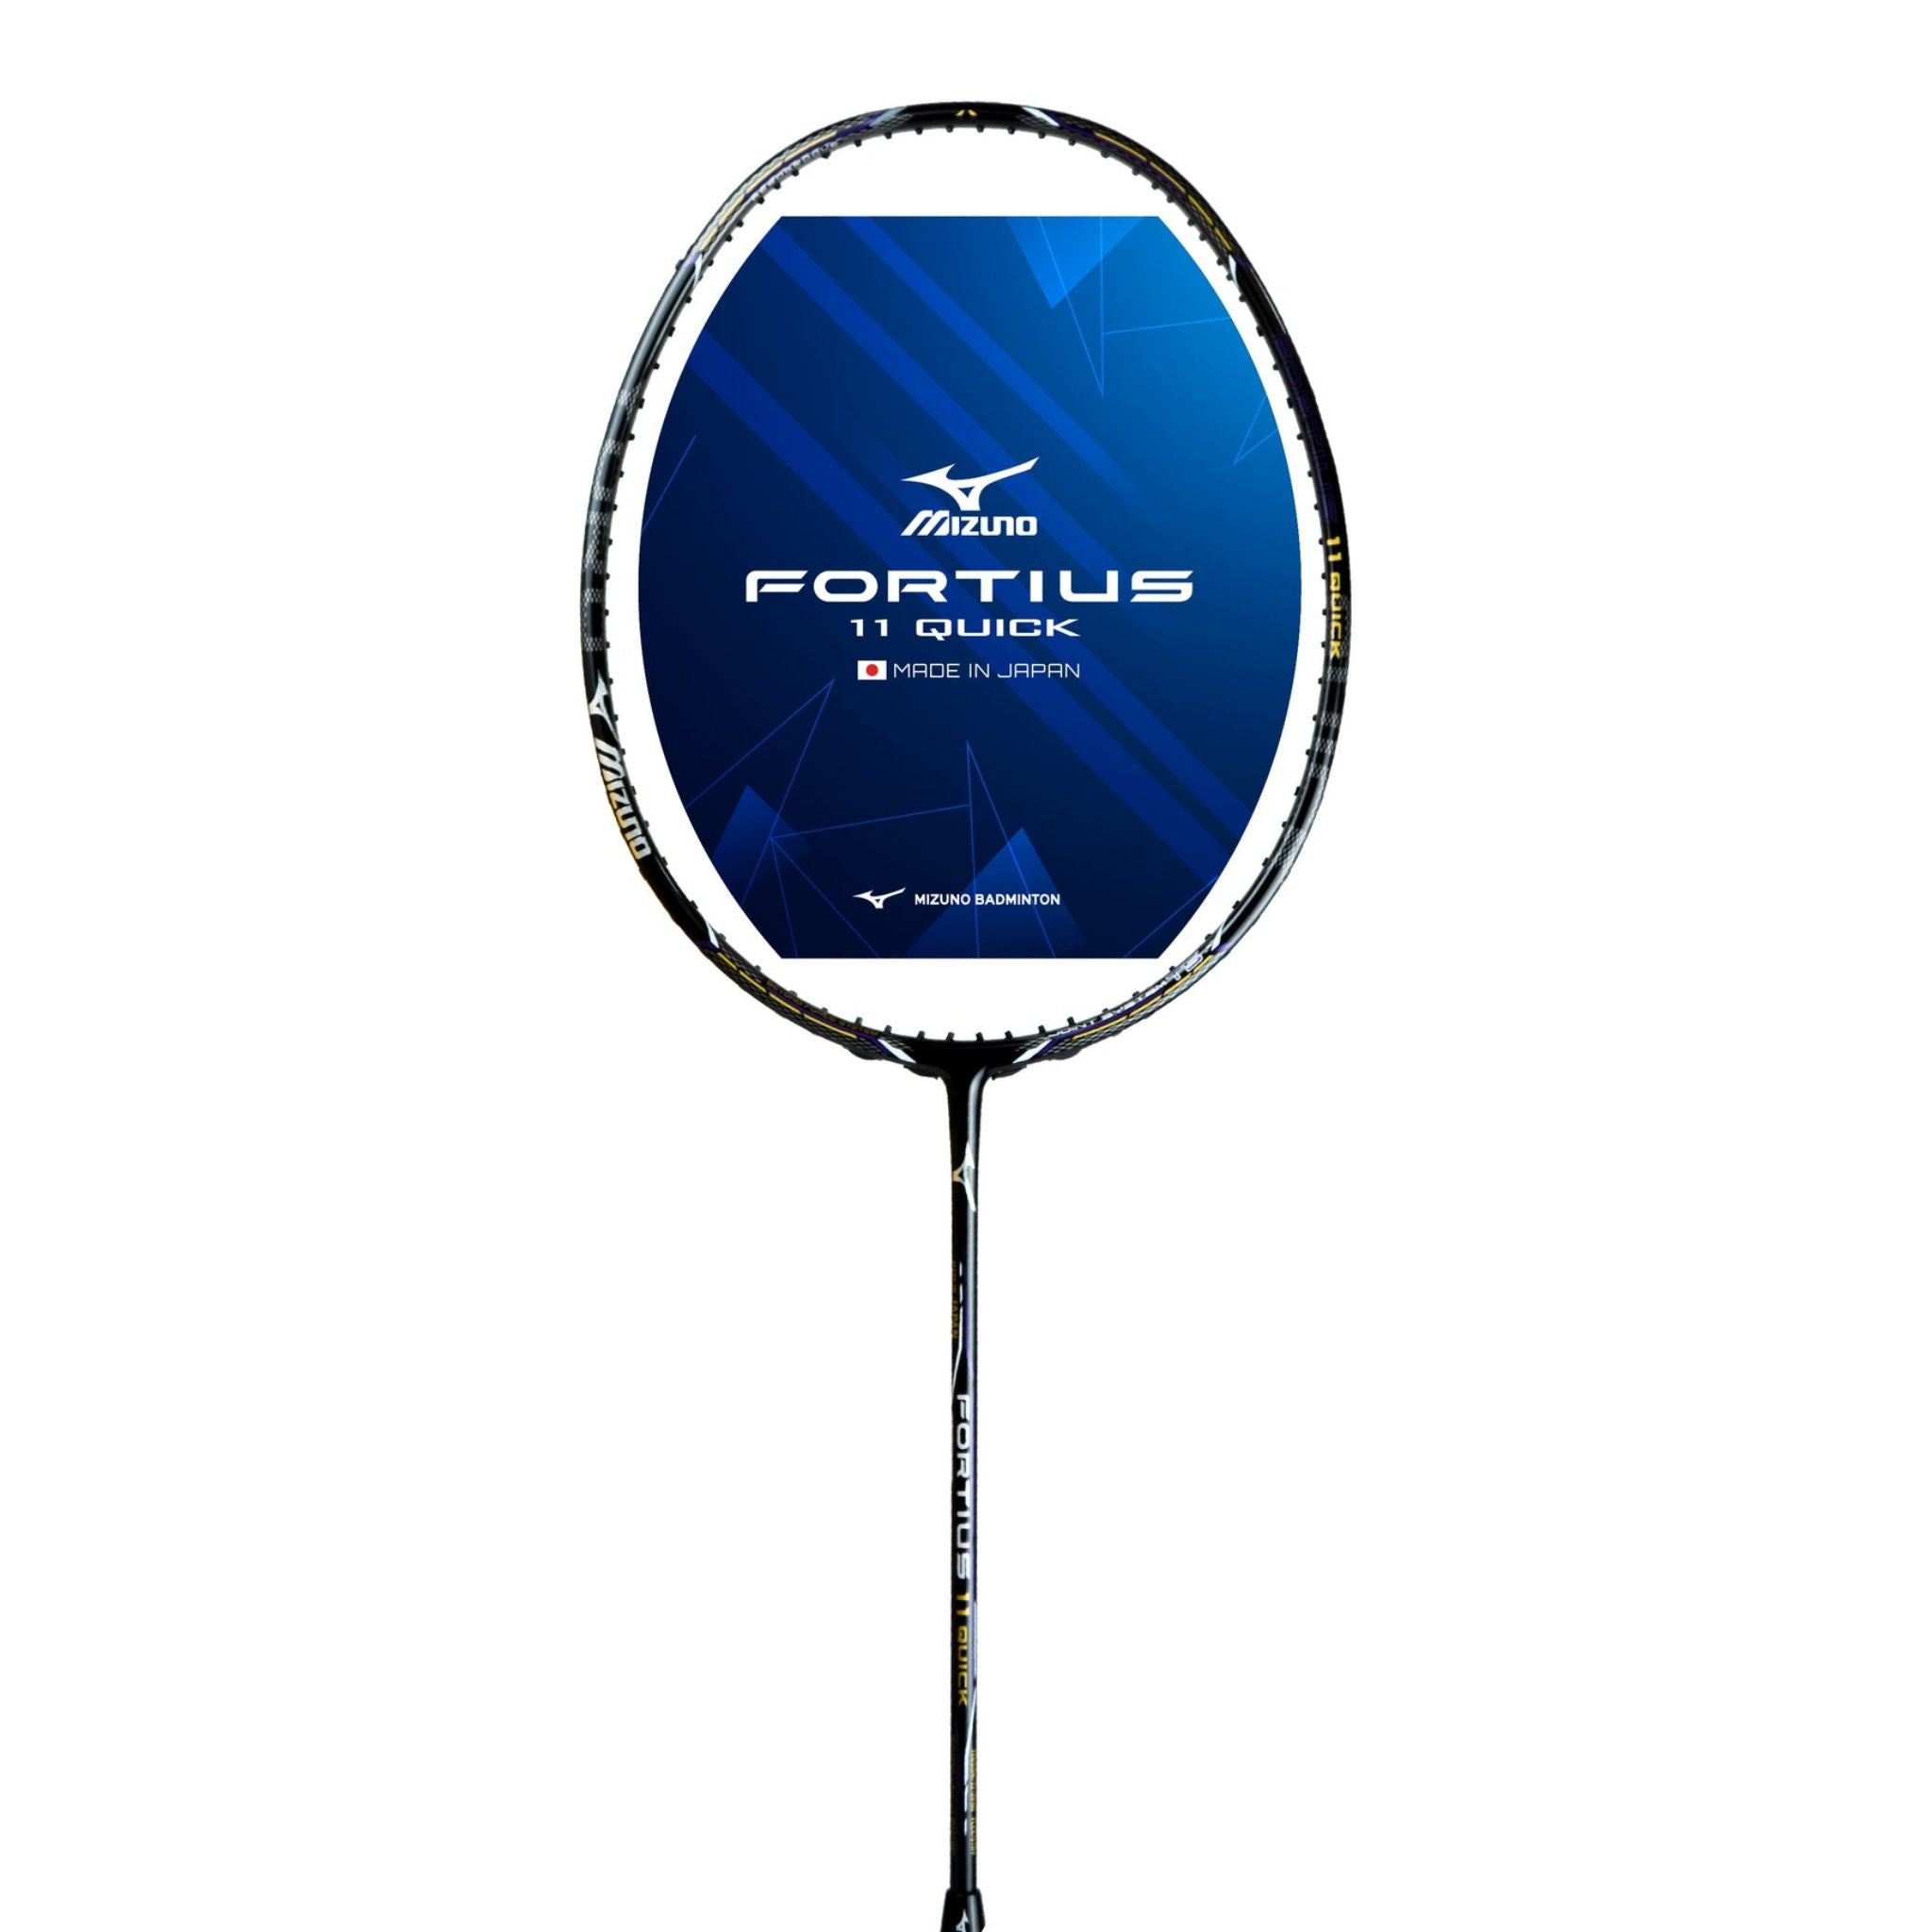 Mizuno Fortius 11 Quick Badminton Racket - TriplePointSports